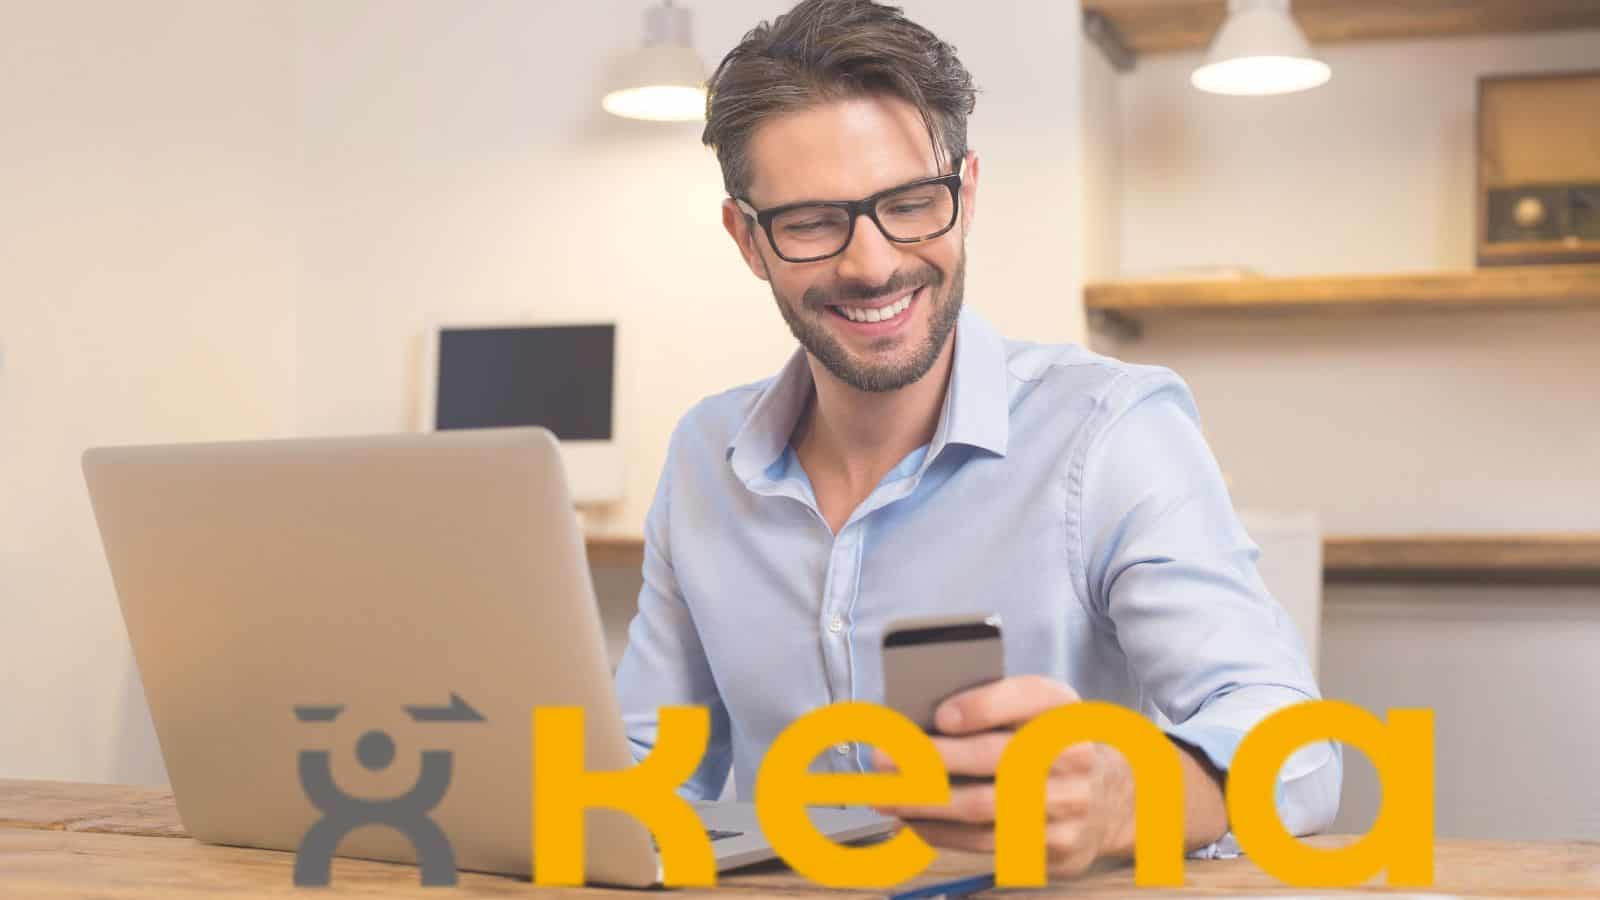 Kena Mobile offre una promo davvero imperdibile